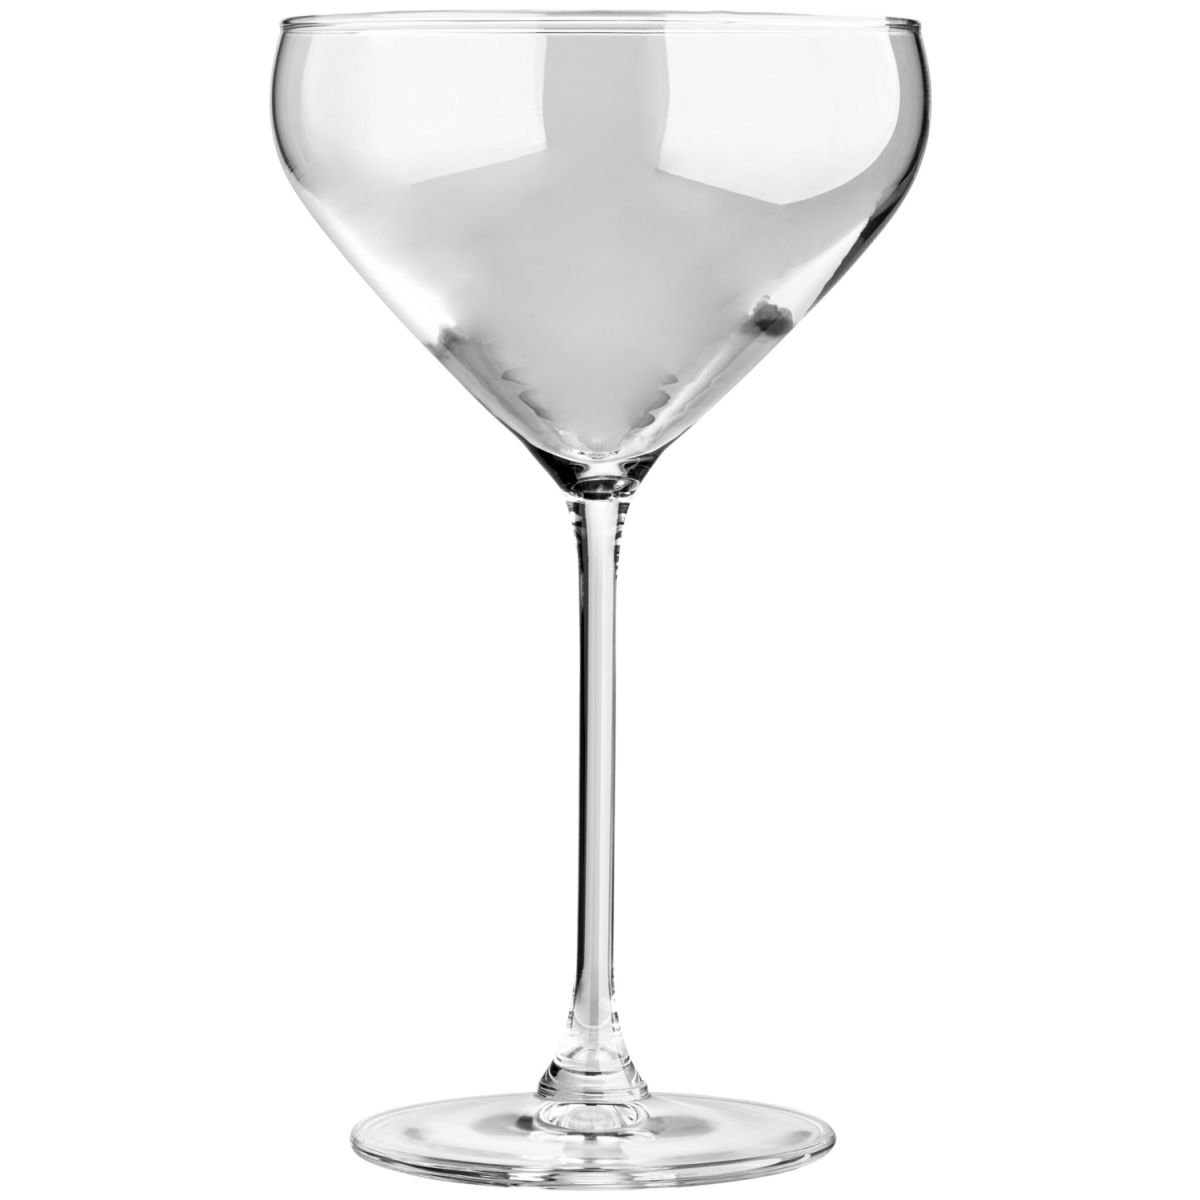 Vega Champagne coupe Amilia met vulstreepje; 300ml, 9.7x17.3 cm (ØxH); transparant; 0.1 l vulstreepje, 6 stuk / verpakking